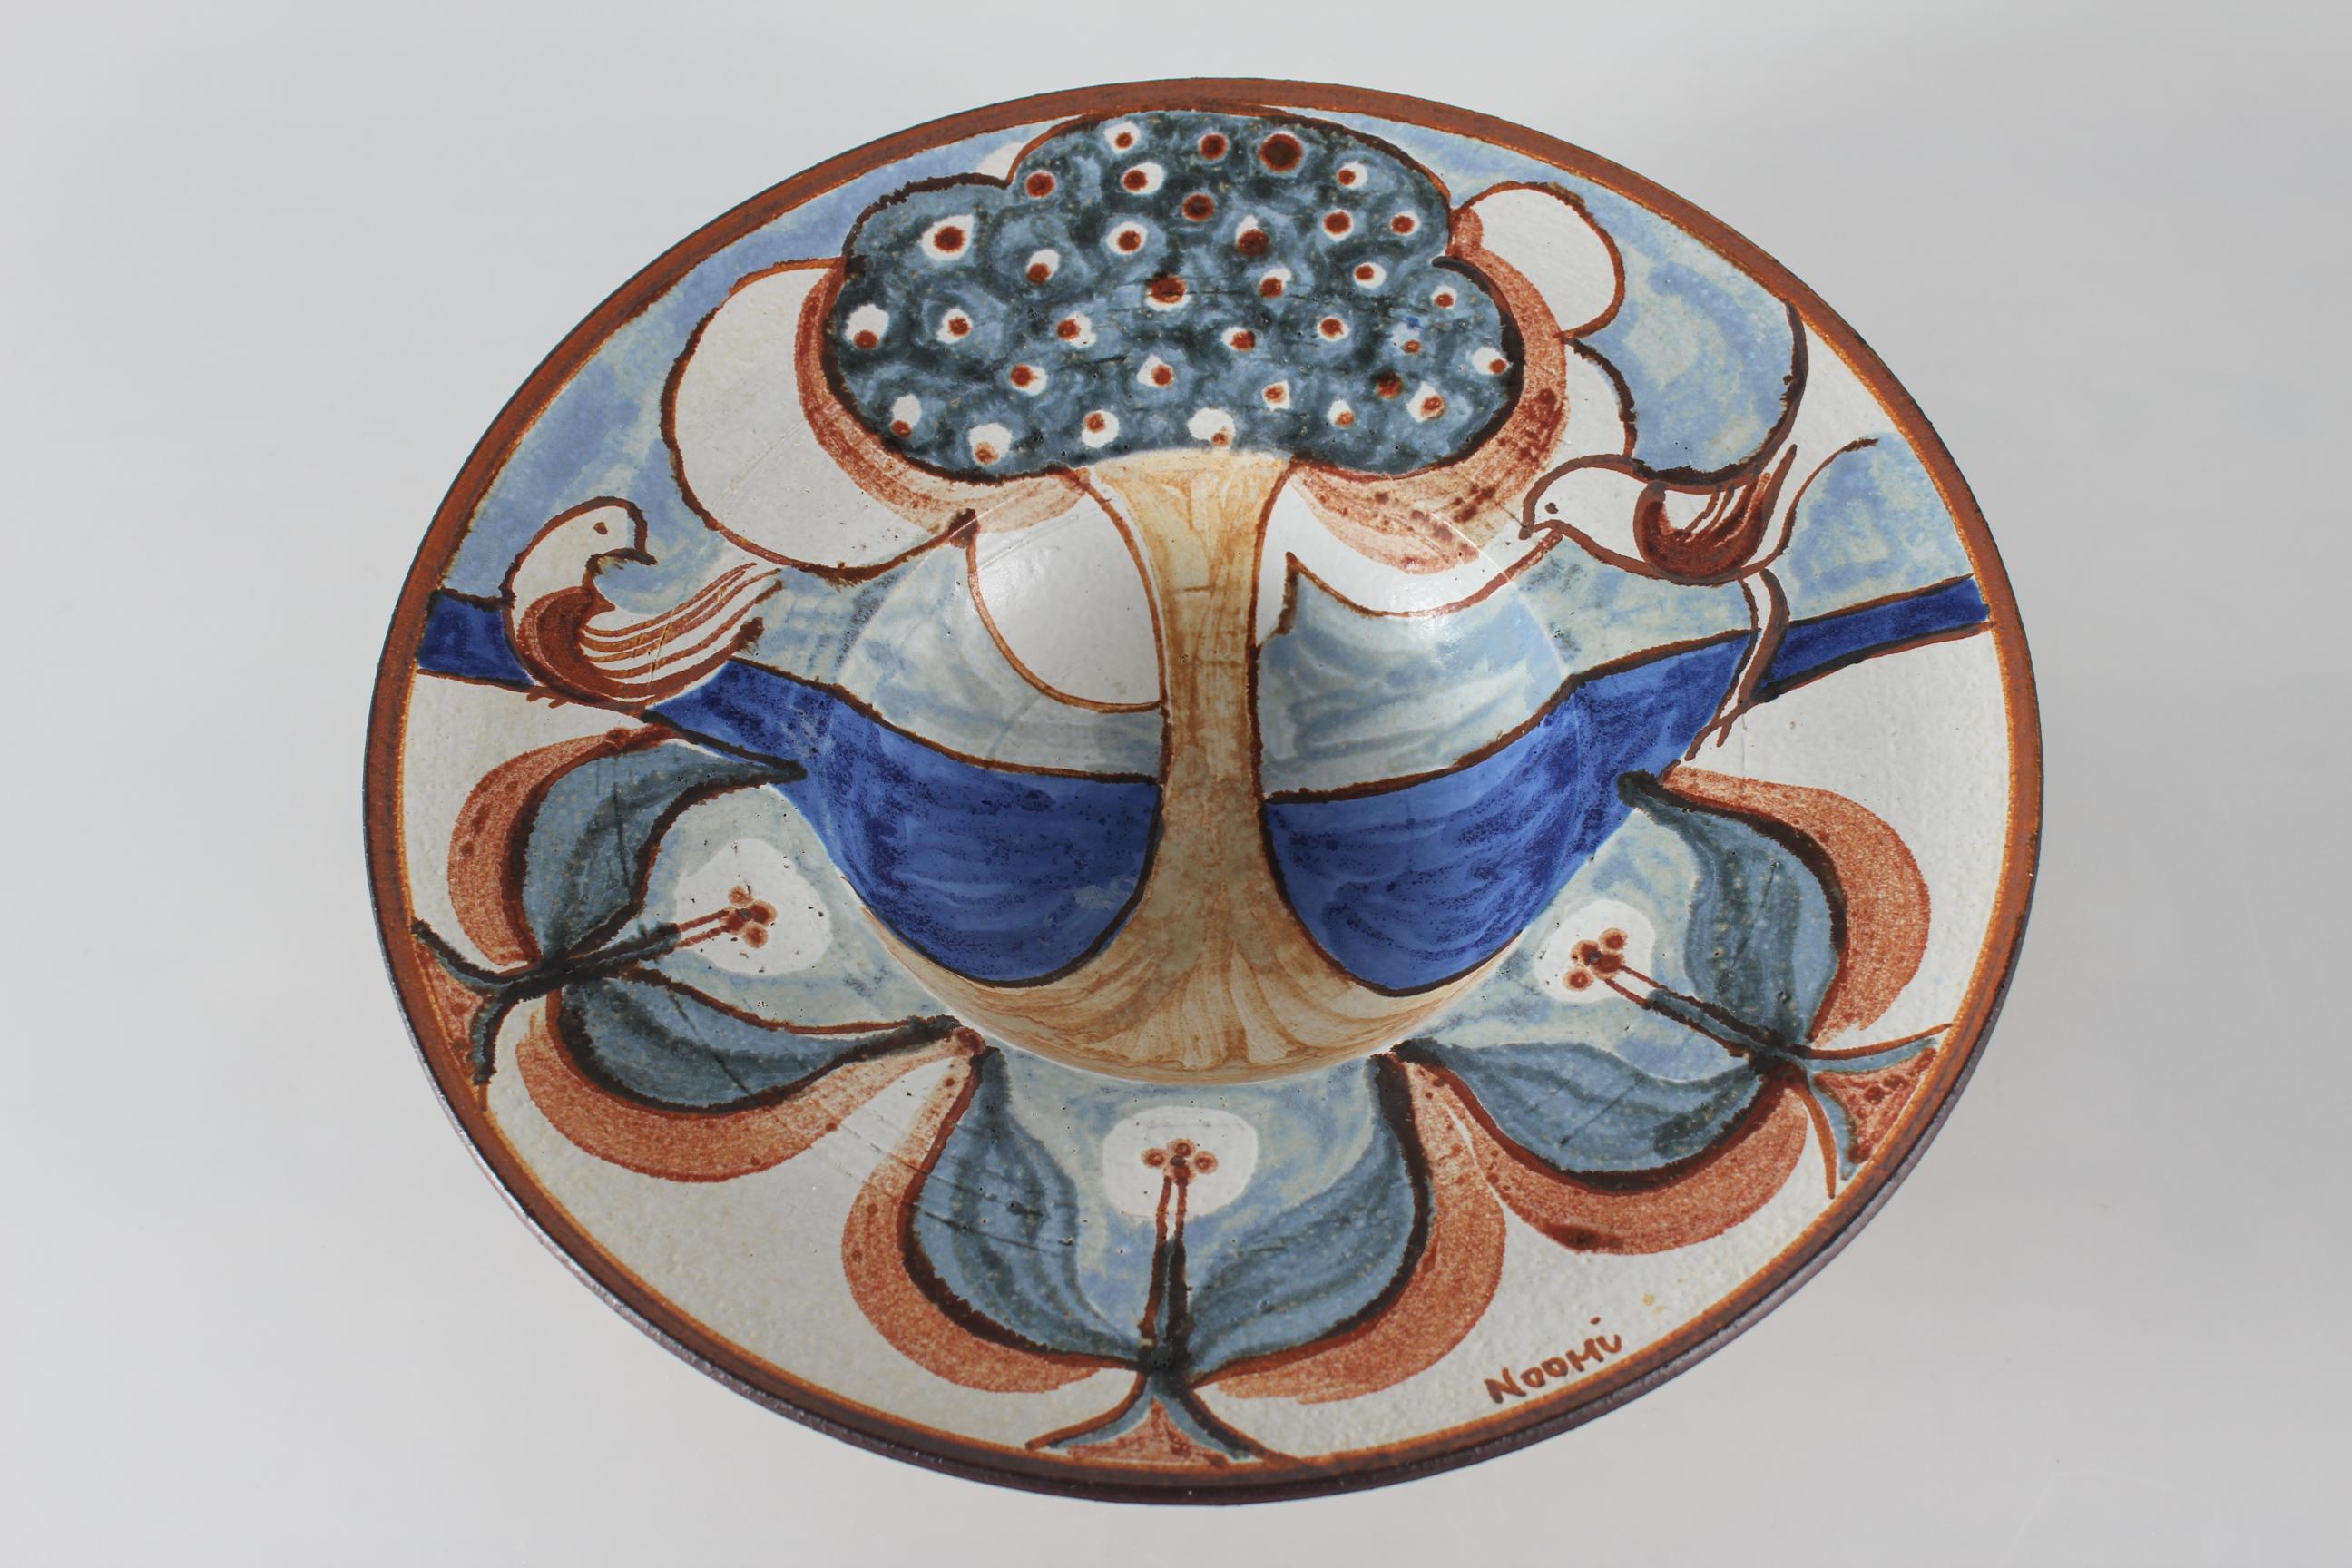 Riesige Keramikschale von Noomi Backhausen für Søholm Denmark.
Diese Schale mit dem Lebensbaum-Motiv ist aus Schamotte-Ton gefertigt, der ihr eine lebendige Oberfläche verleiht. 
Sie ist mit cremefarbenen, braunen, dunkelblauen, hellblauen und